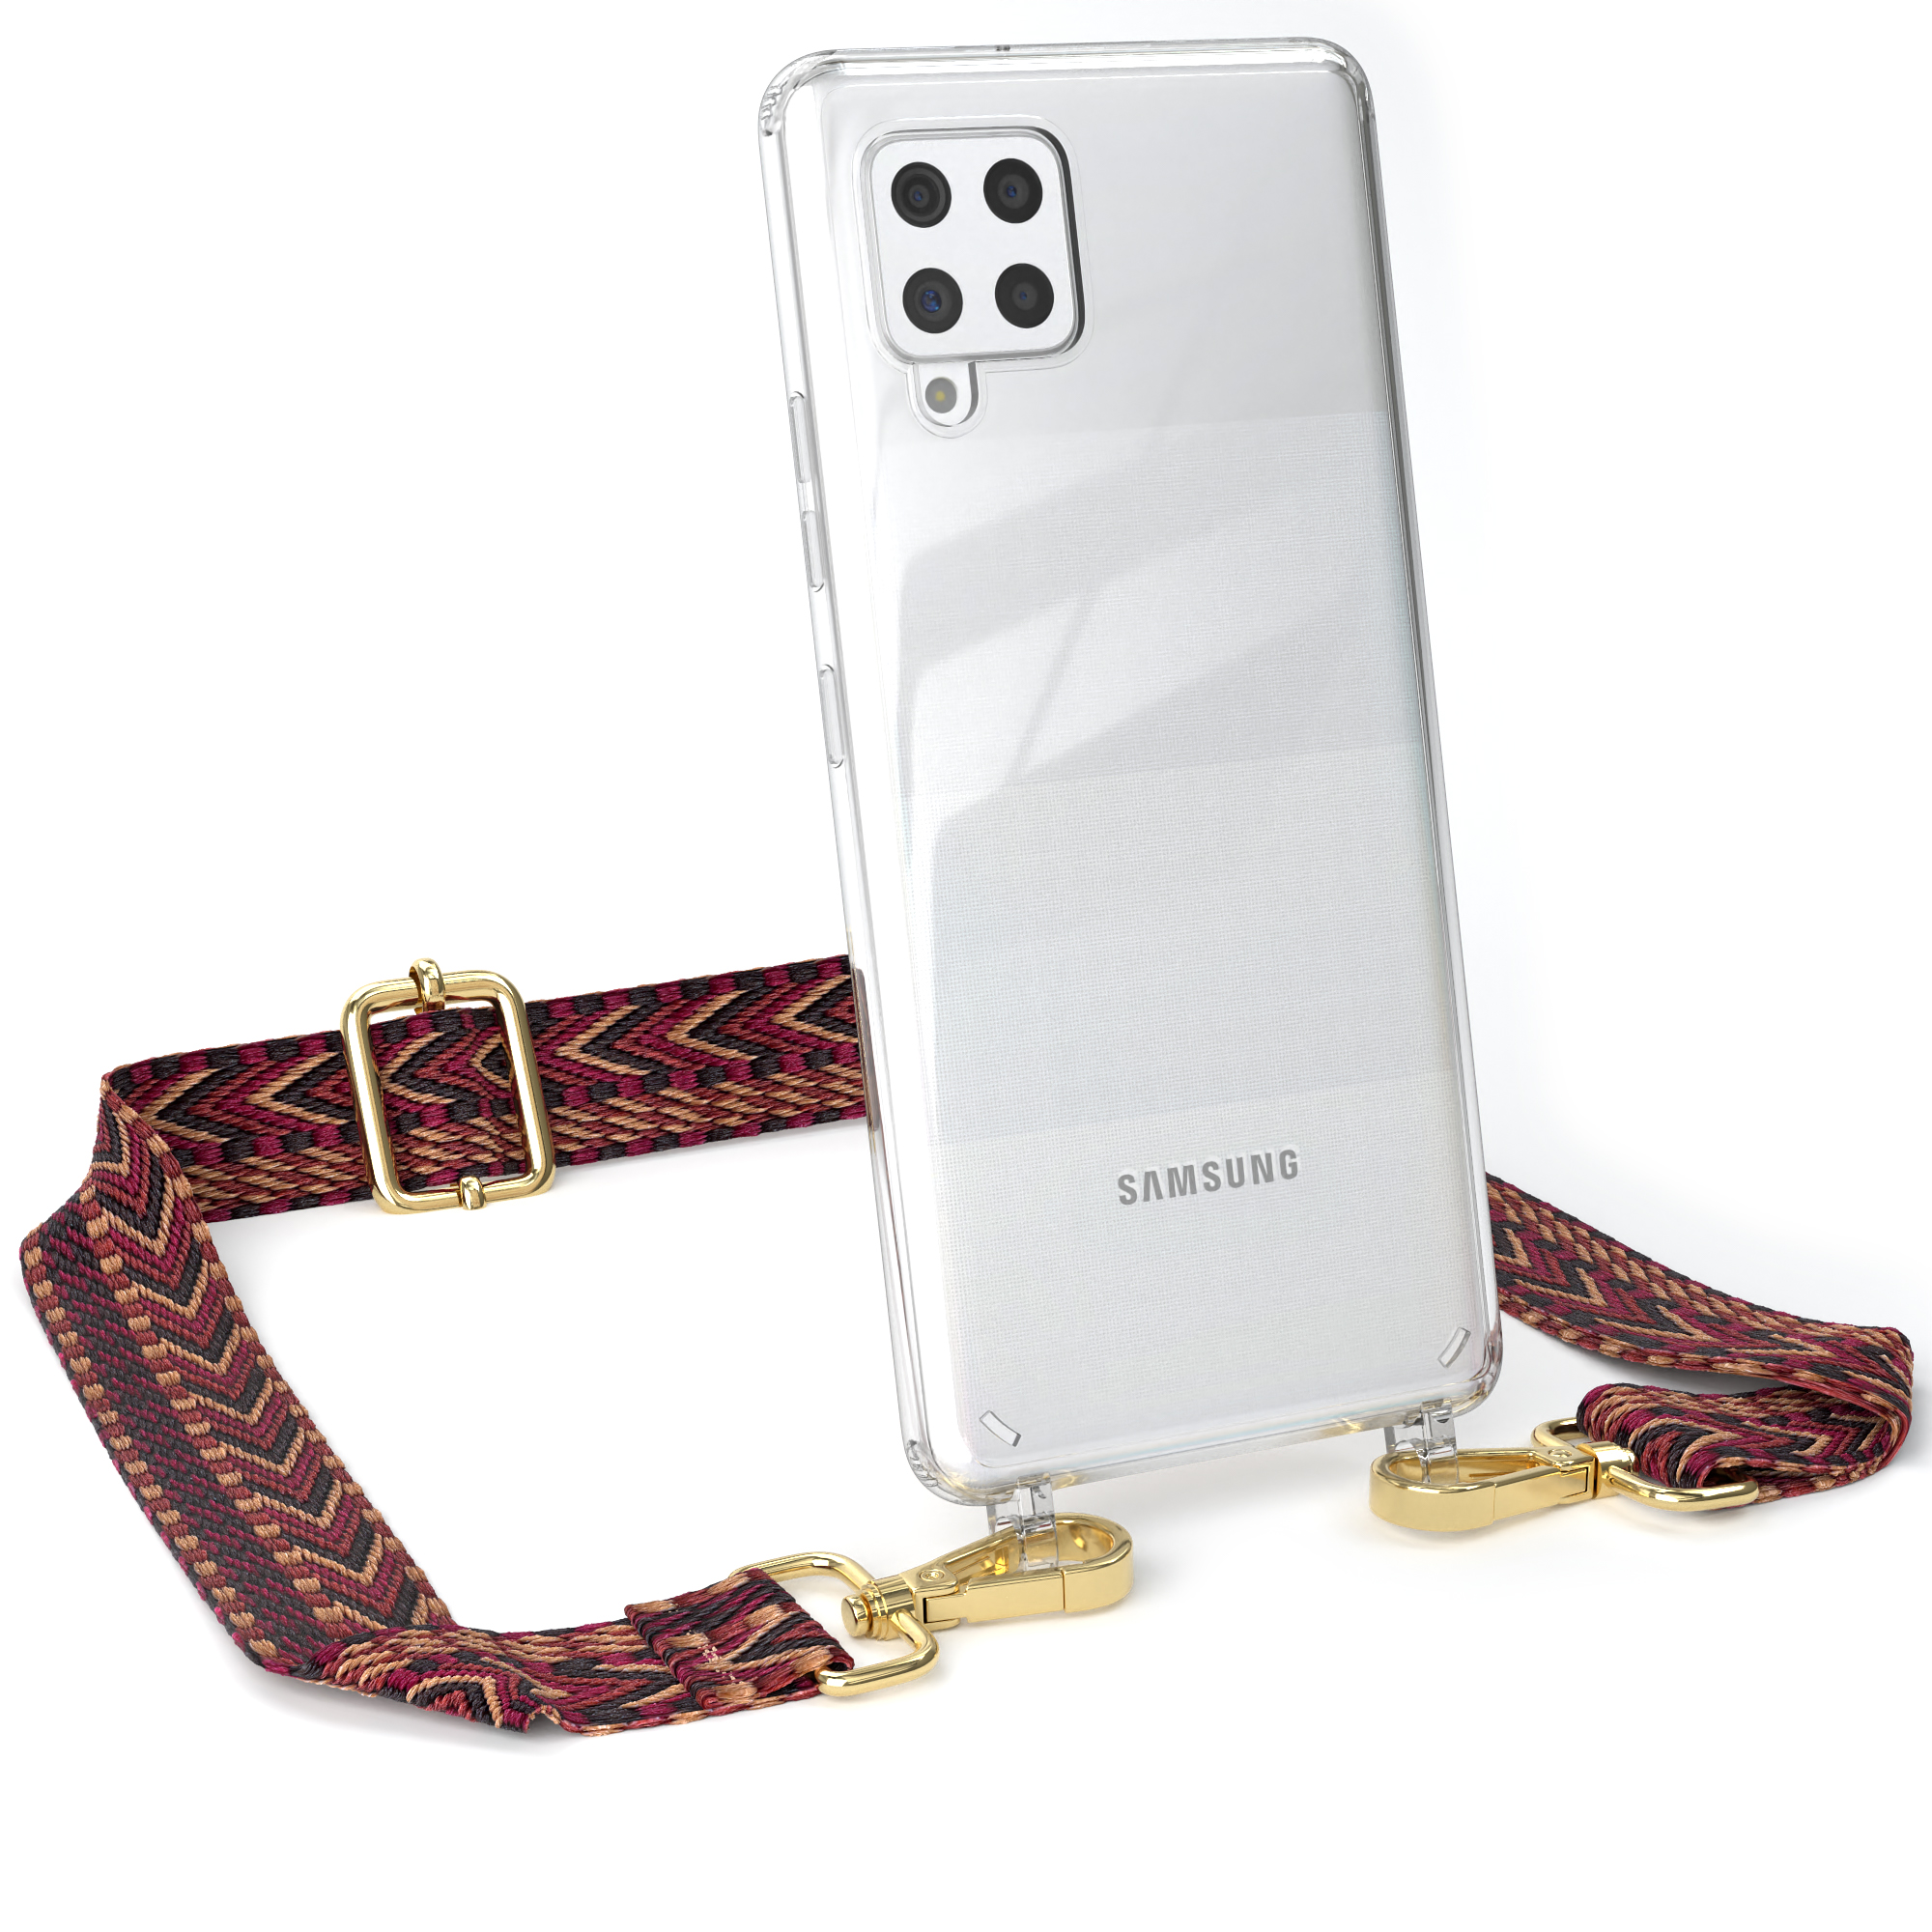 EAZY CASE Transparente Kordel Samsung, 5G, Boho Handyhülle Style, Braun mit Galaxy Rot Umhängetasche, / A42